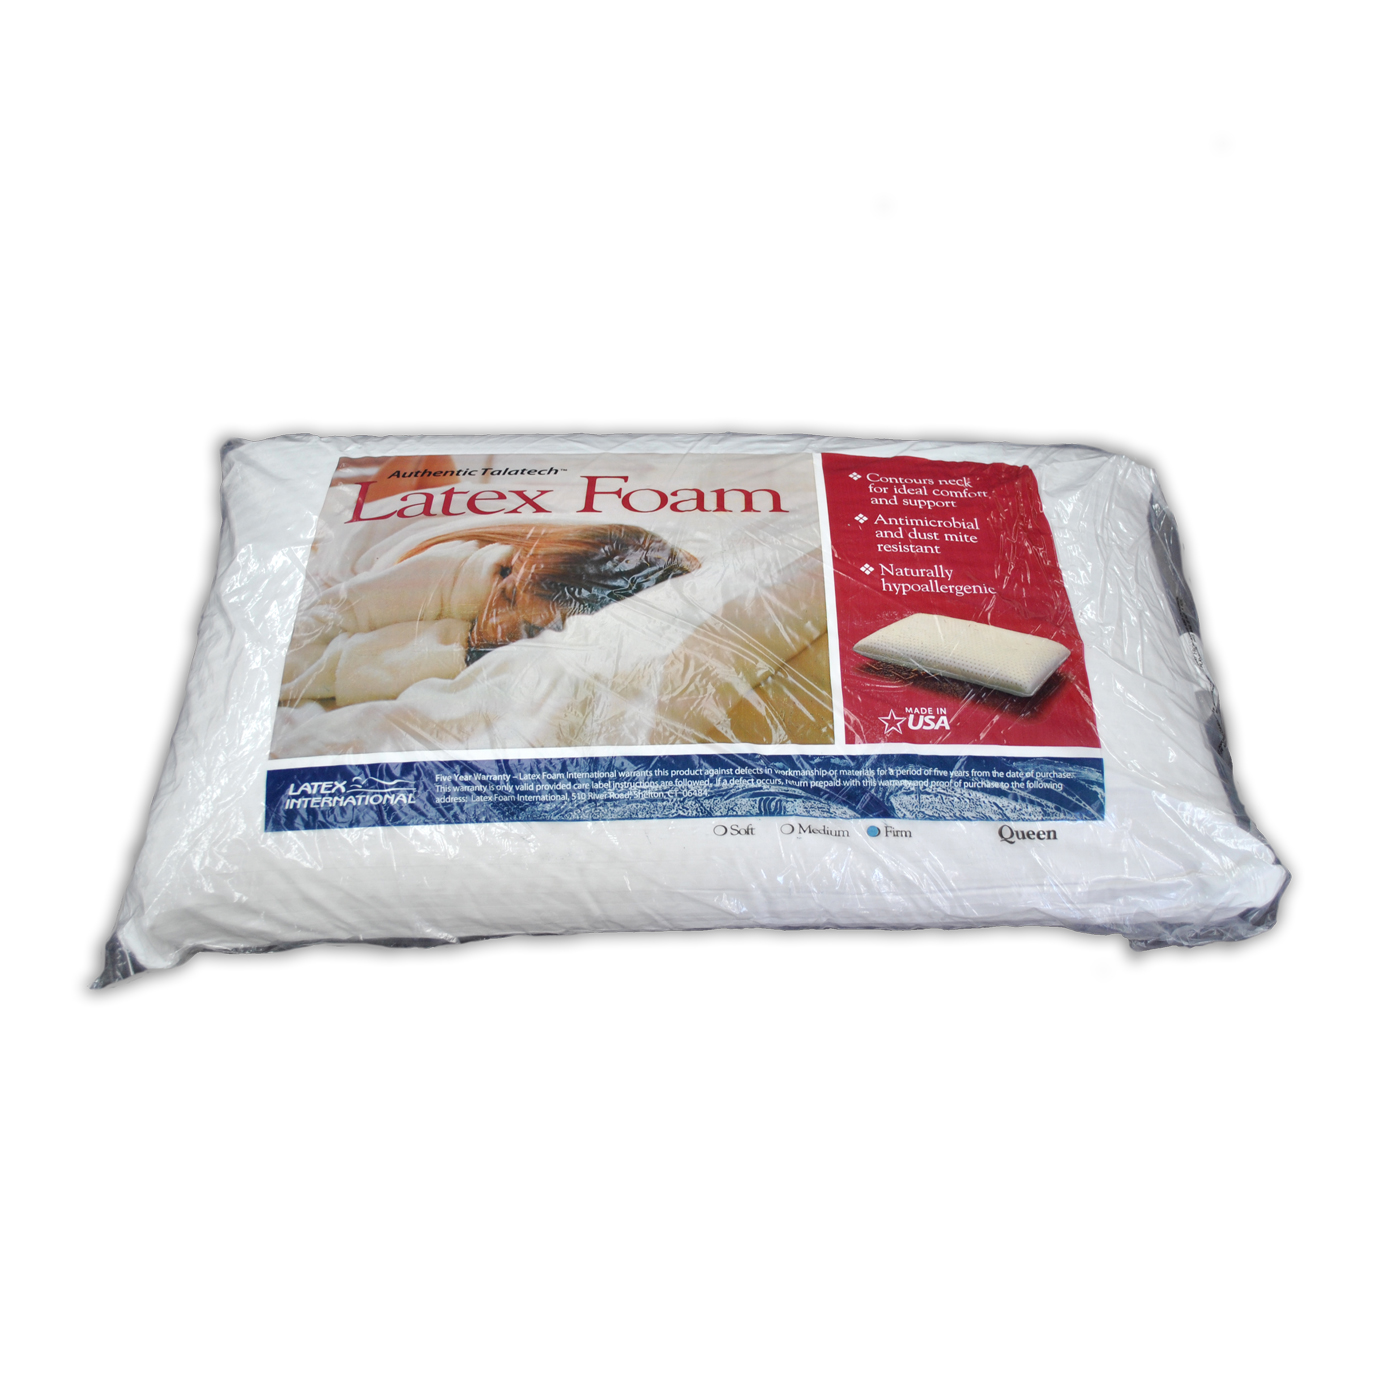 Latex Foam Pillow firm medium